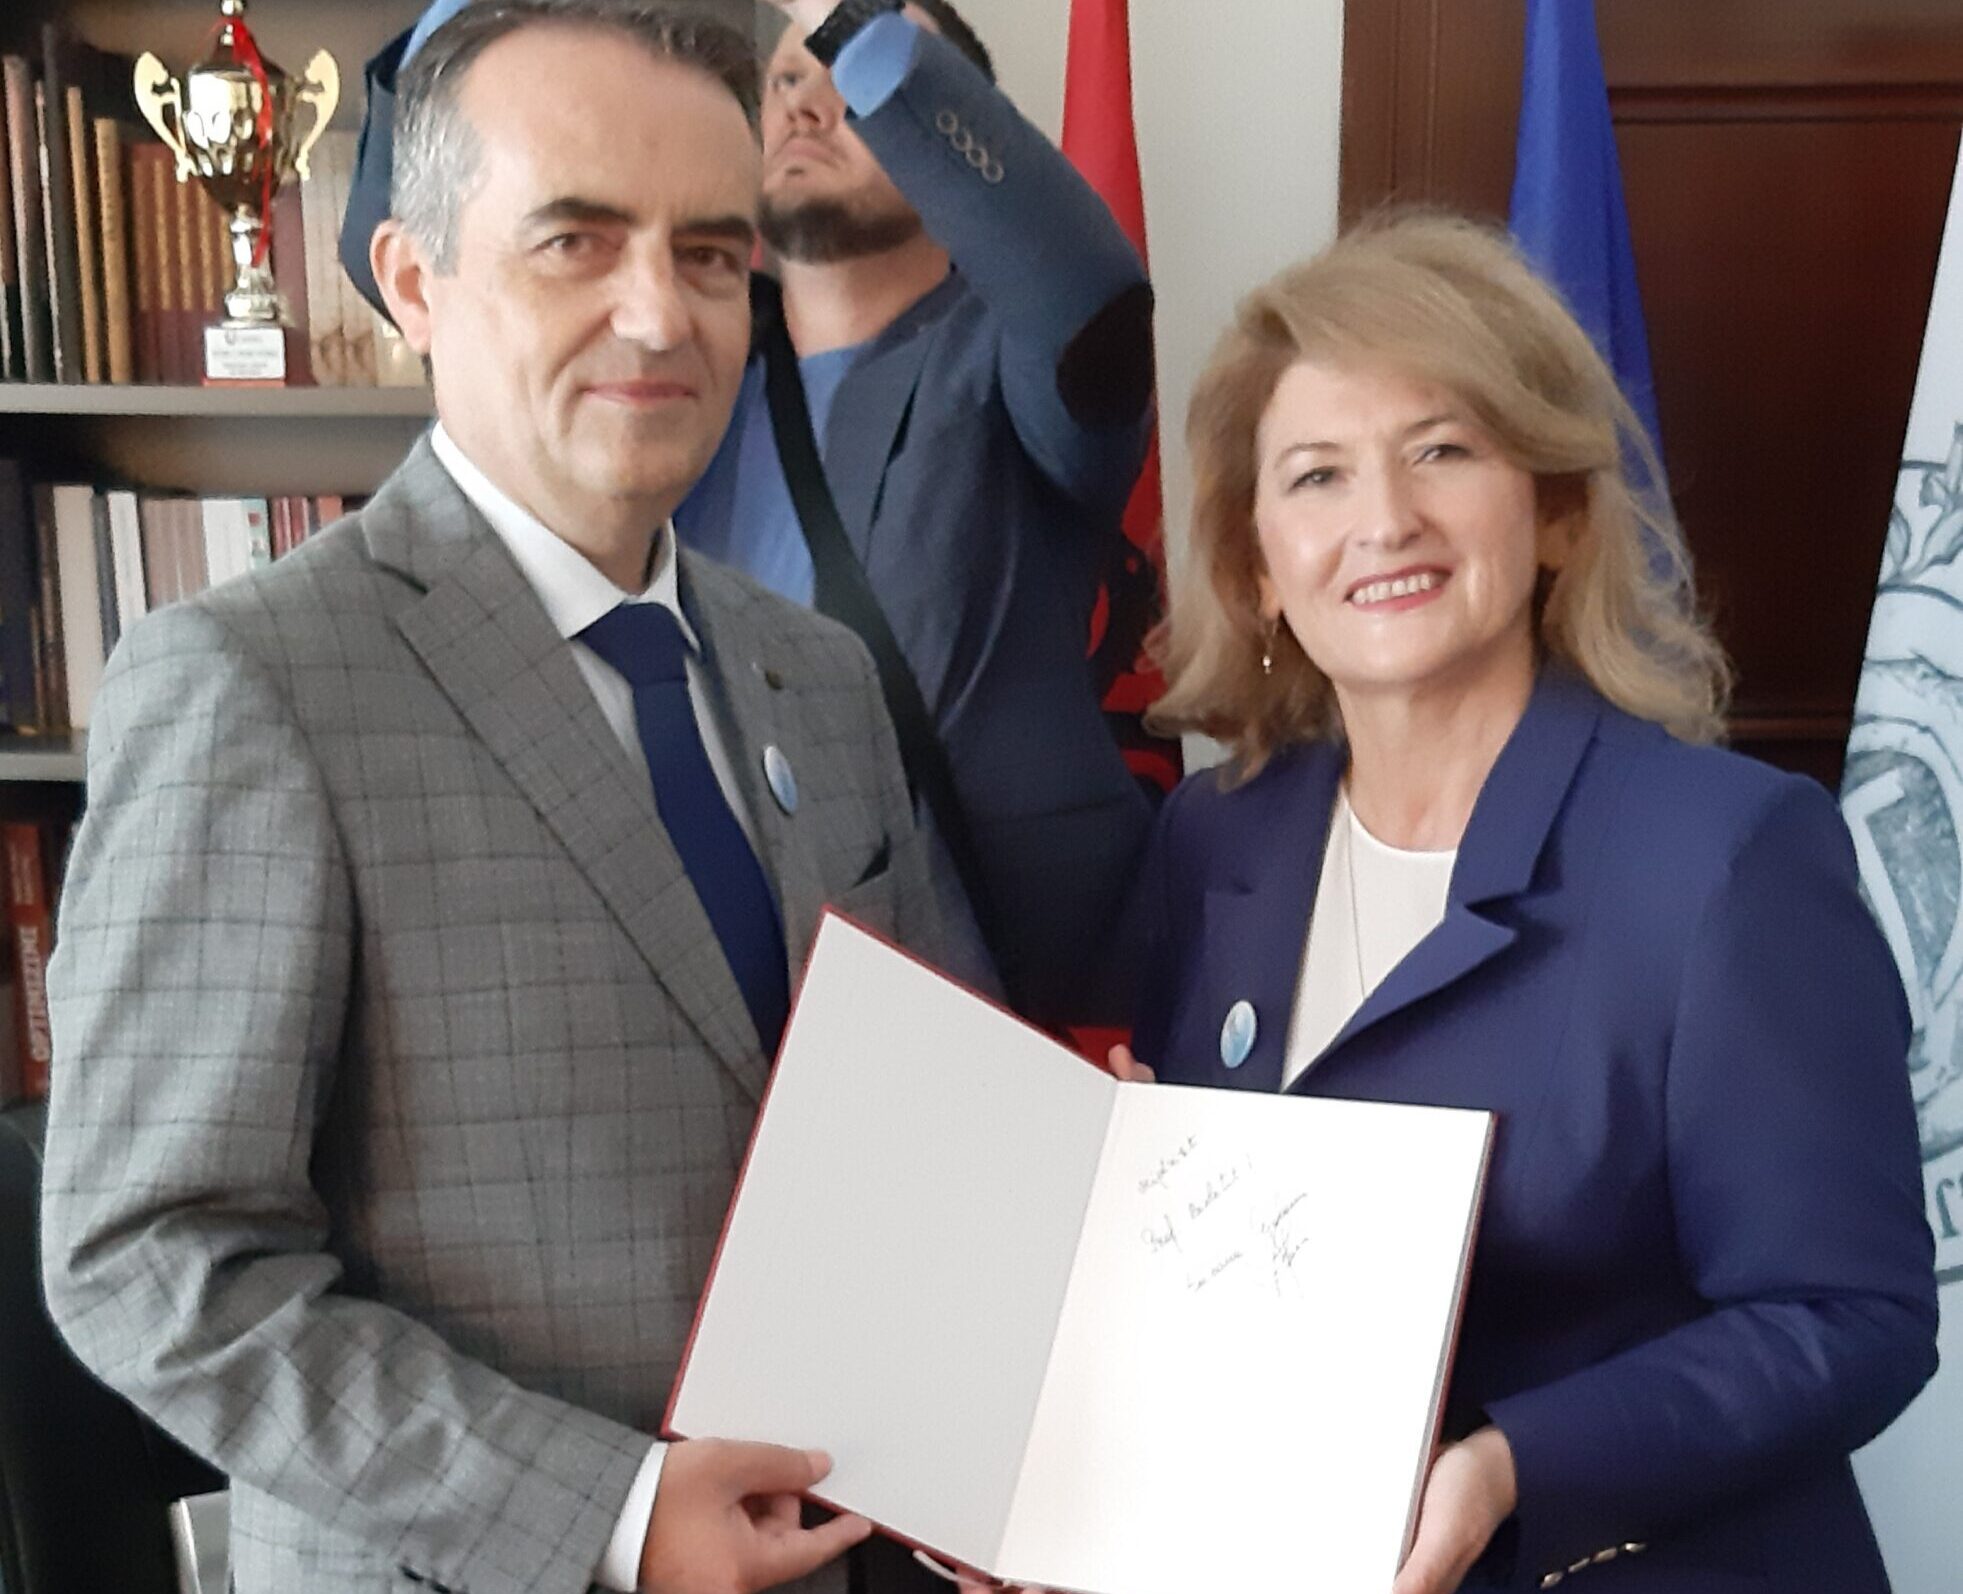 Rektori Musaj Dhe Prorektori Shala Morën Pjesë Në Shënimin E 65-vjetorit Të Universitetit Të Shkodrës “Luigj Gurakuqi”